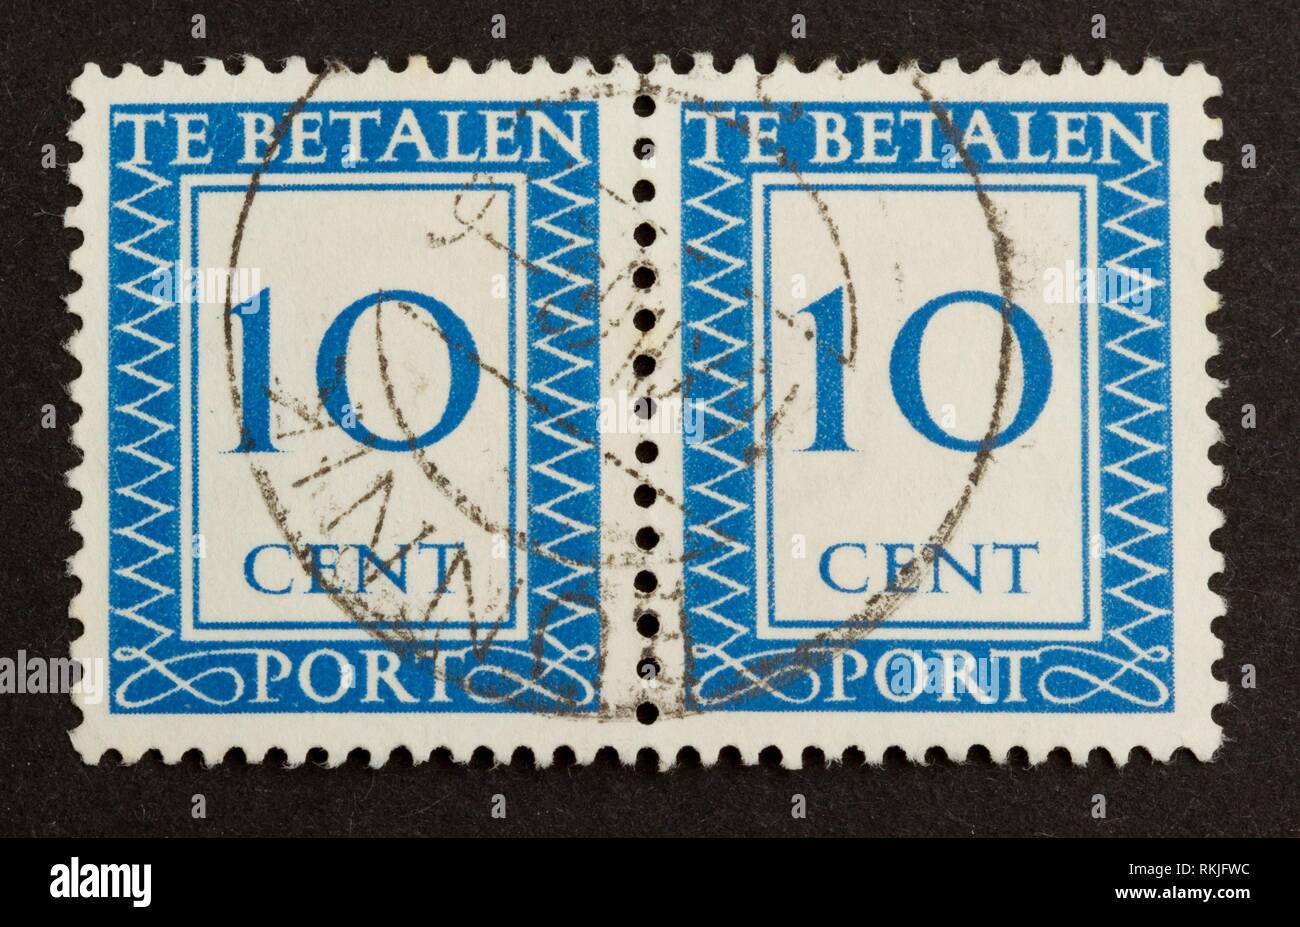 Betalen stamp te port Stamp Finder